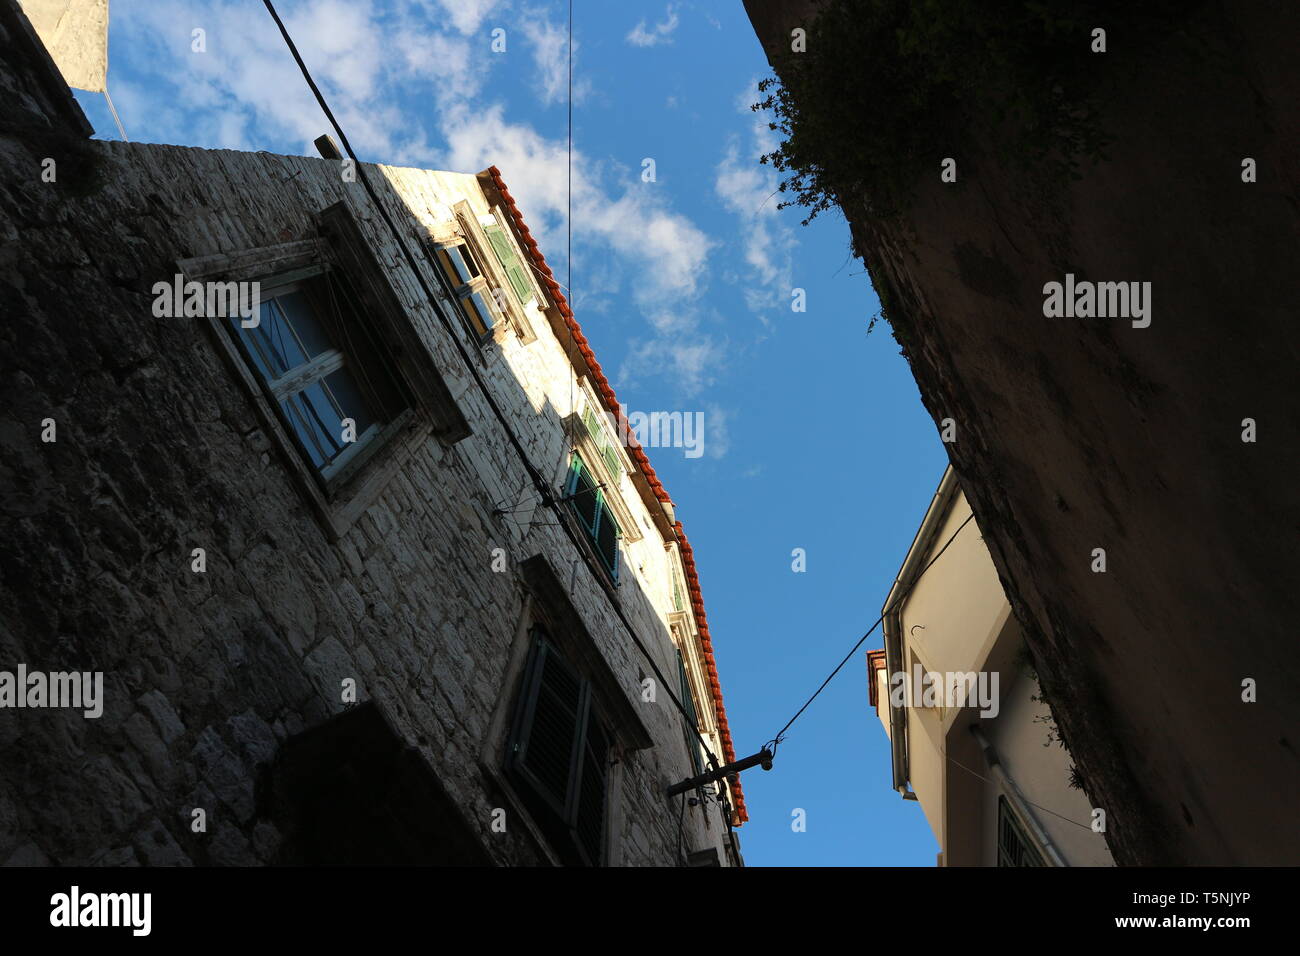 Chambre fronts dans un style du sud de l'Europe (croate). Ils sont photographiés dans un angle bas et vers le ciel. Banque D'Images